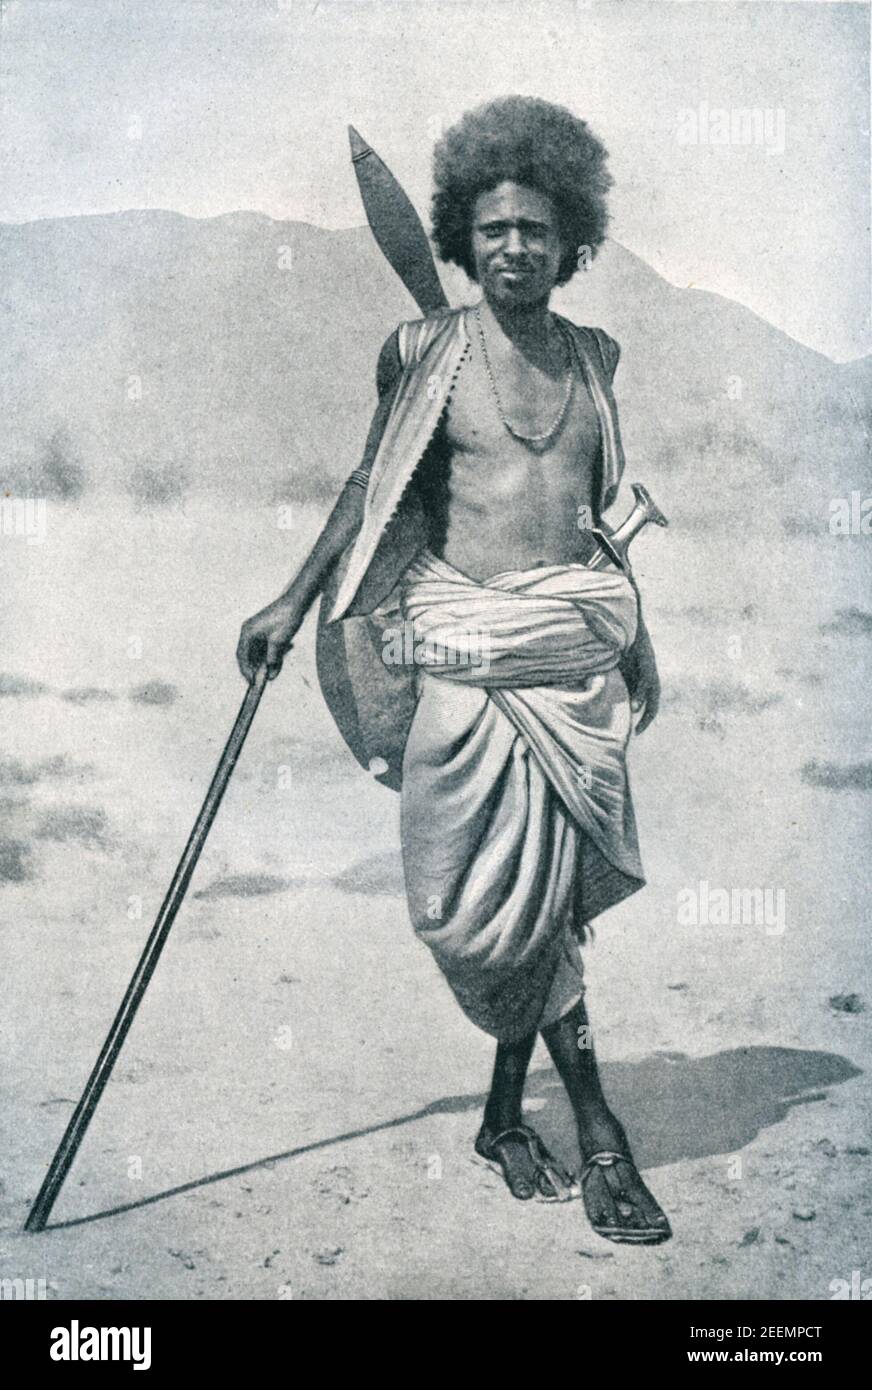 Photo du début du XXe siècle d'un membre de la tribu nomade Hadendoa Beja de l'est du Soudan, armé de lance, d'épée et de bouclier. Leur style de cheveux (tiffa) leur a gagné le nom de poussin Fuzzy Wuzzy parmi les troupes britanniques pendant la guerre du Mahdiste des 1880-1890 Banque D'Images